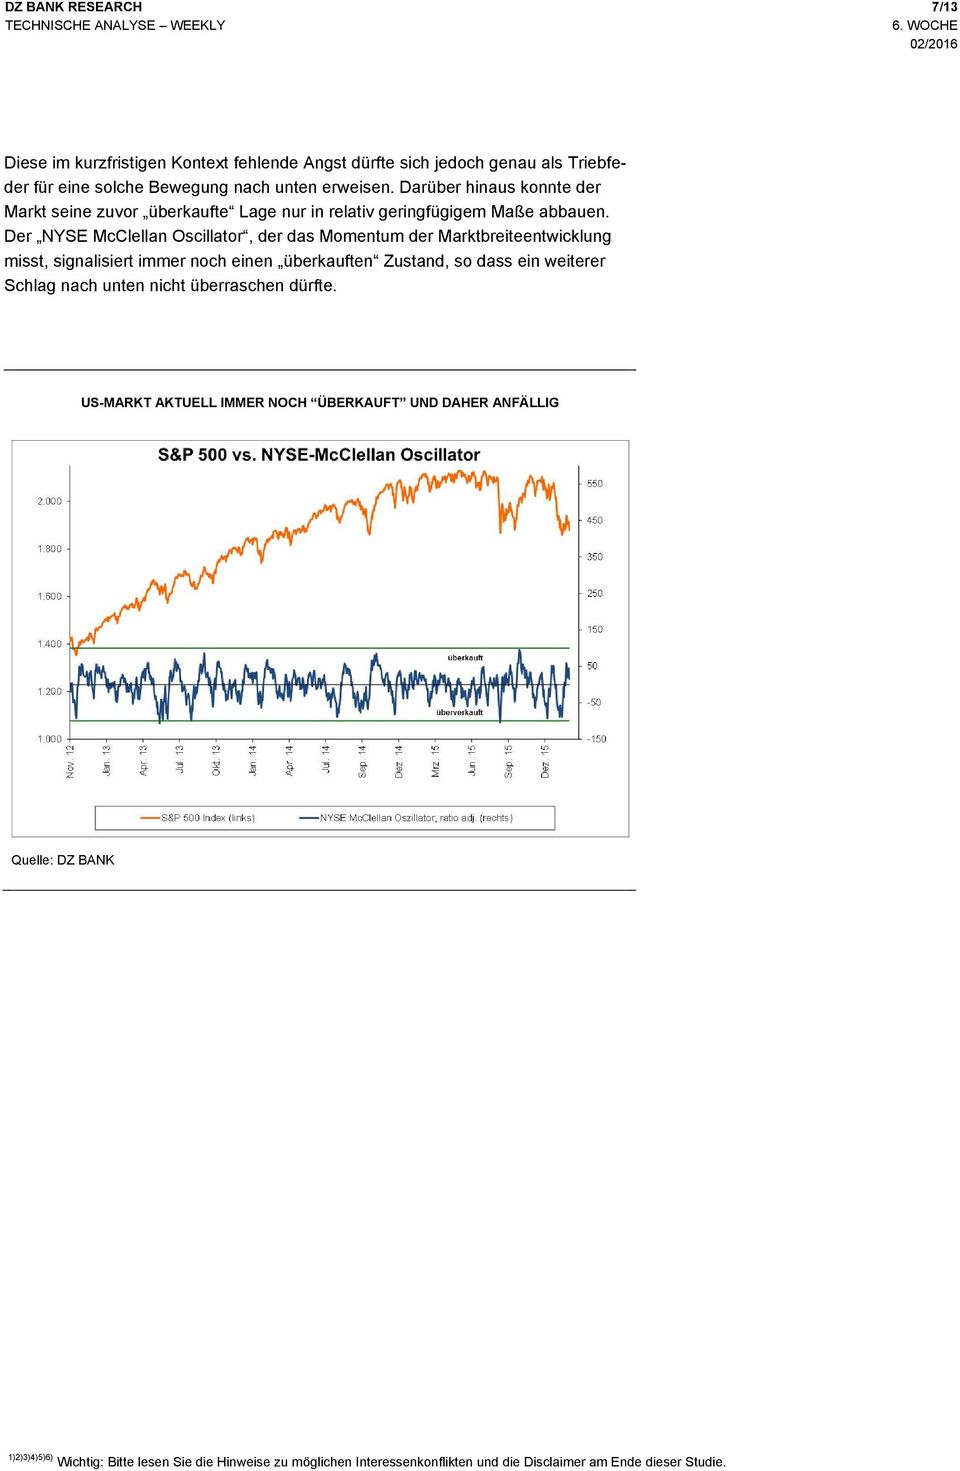 Der NYSE McClellan Oscillator, der das Momentum der Marktbreiteentwicklung misst, signalisiert immer noch einen überkauften